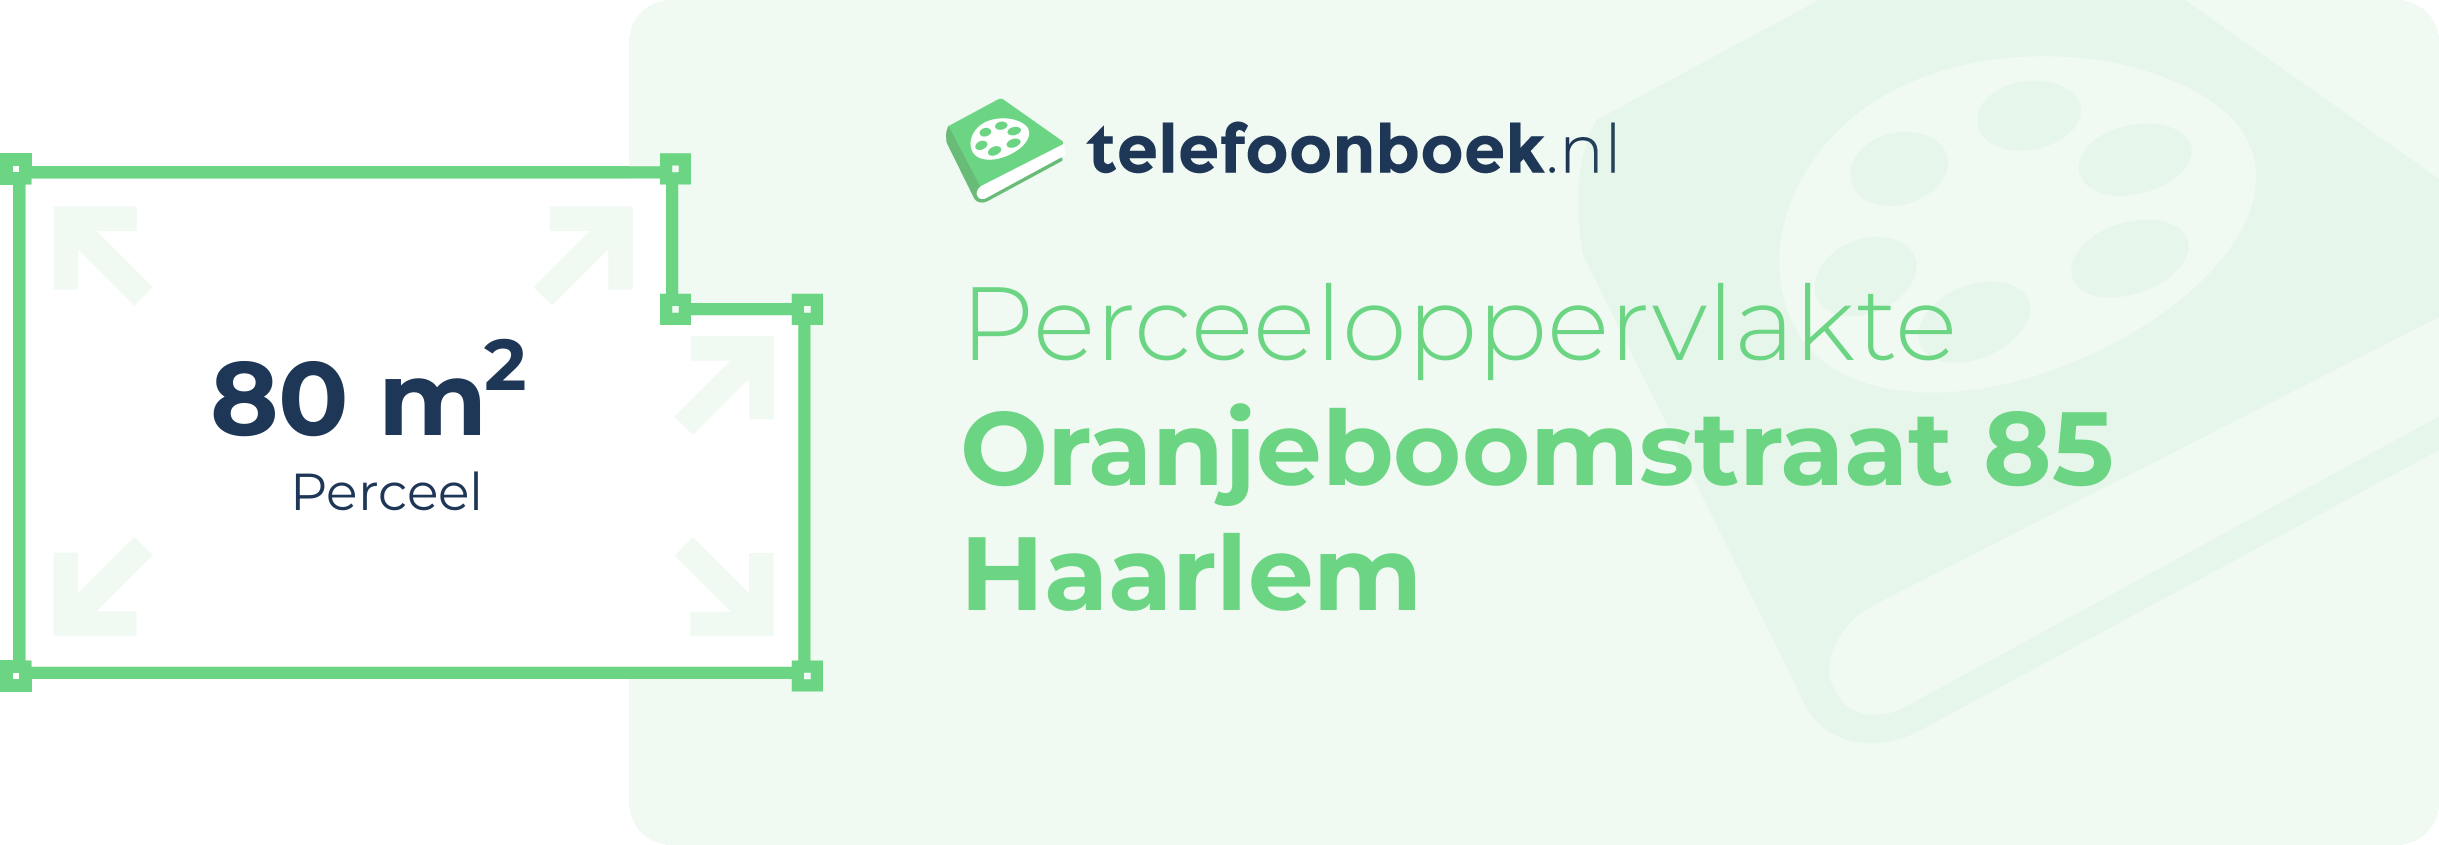 Perceeloppervlakte Oranjeboomstraat 85 Haarlem